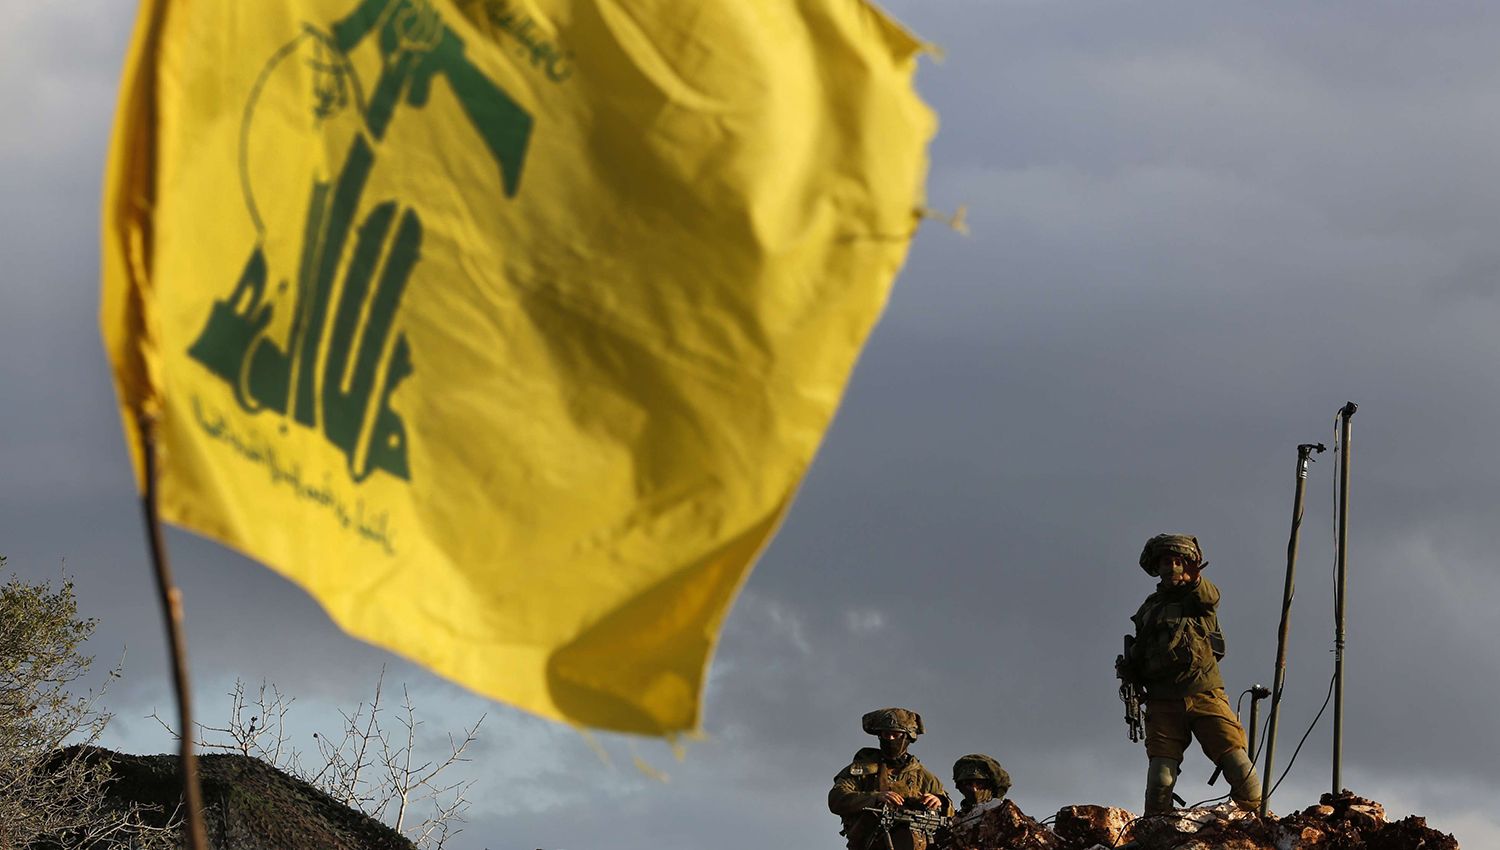 الاعلام العبري: الوضع في الشمال مقلق وصواريخ حزب الله لن تصدأ في المخازن!